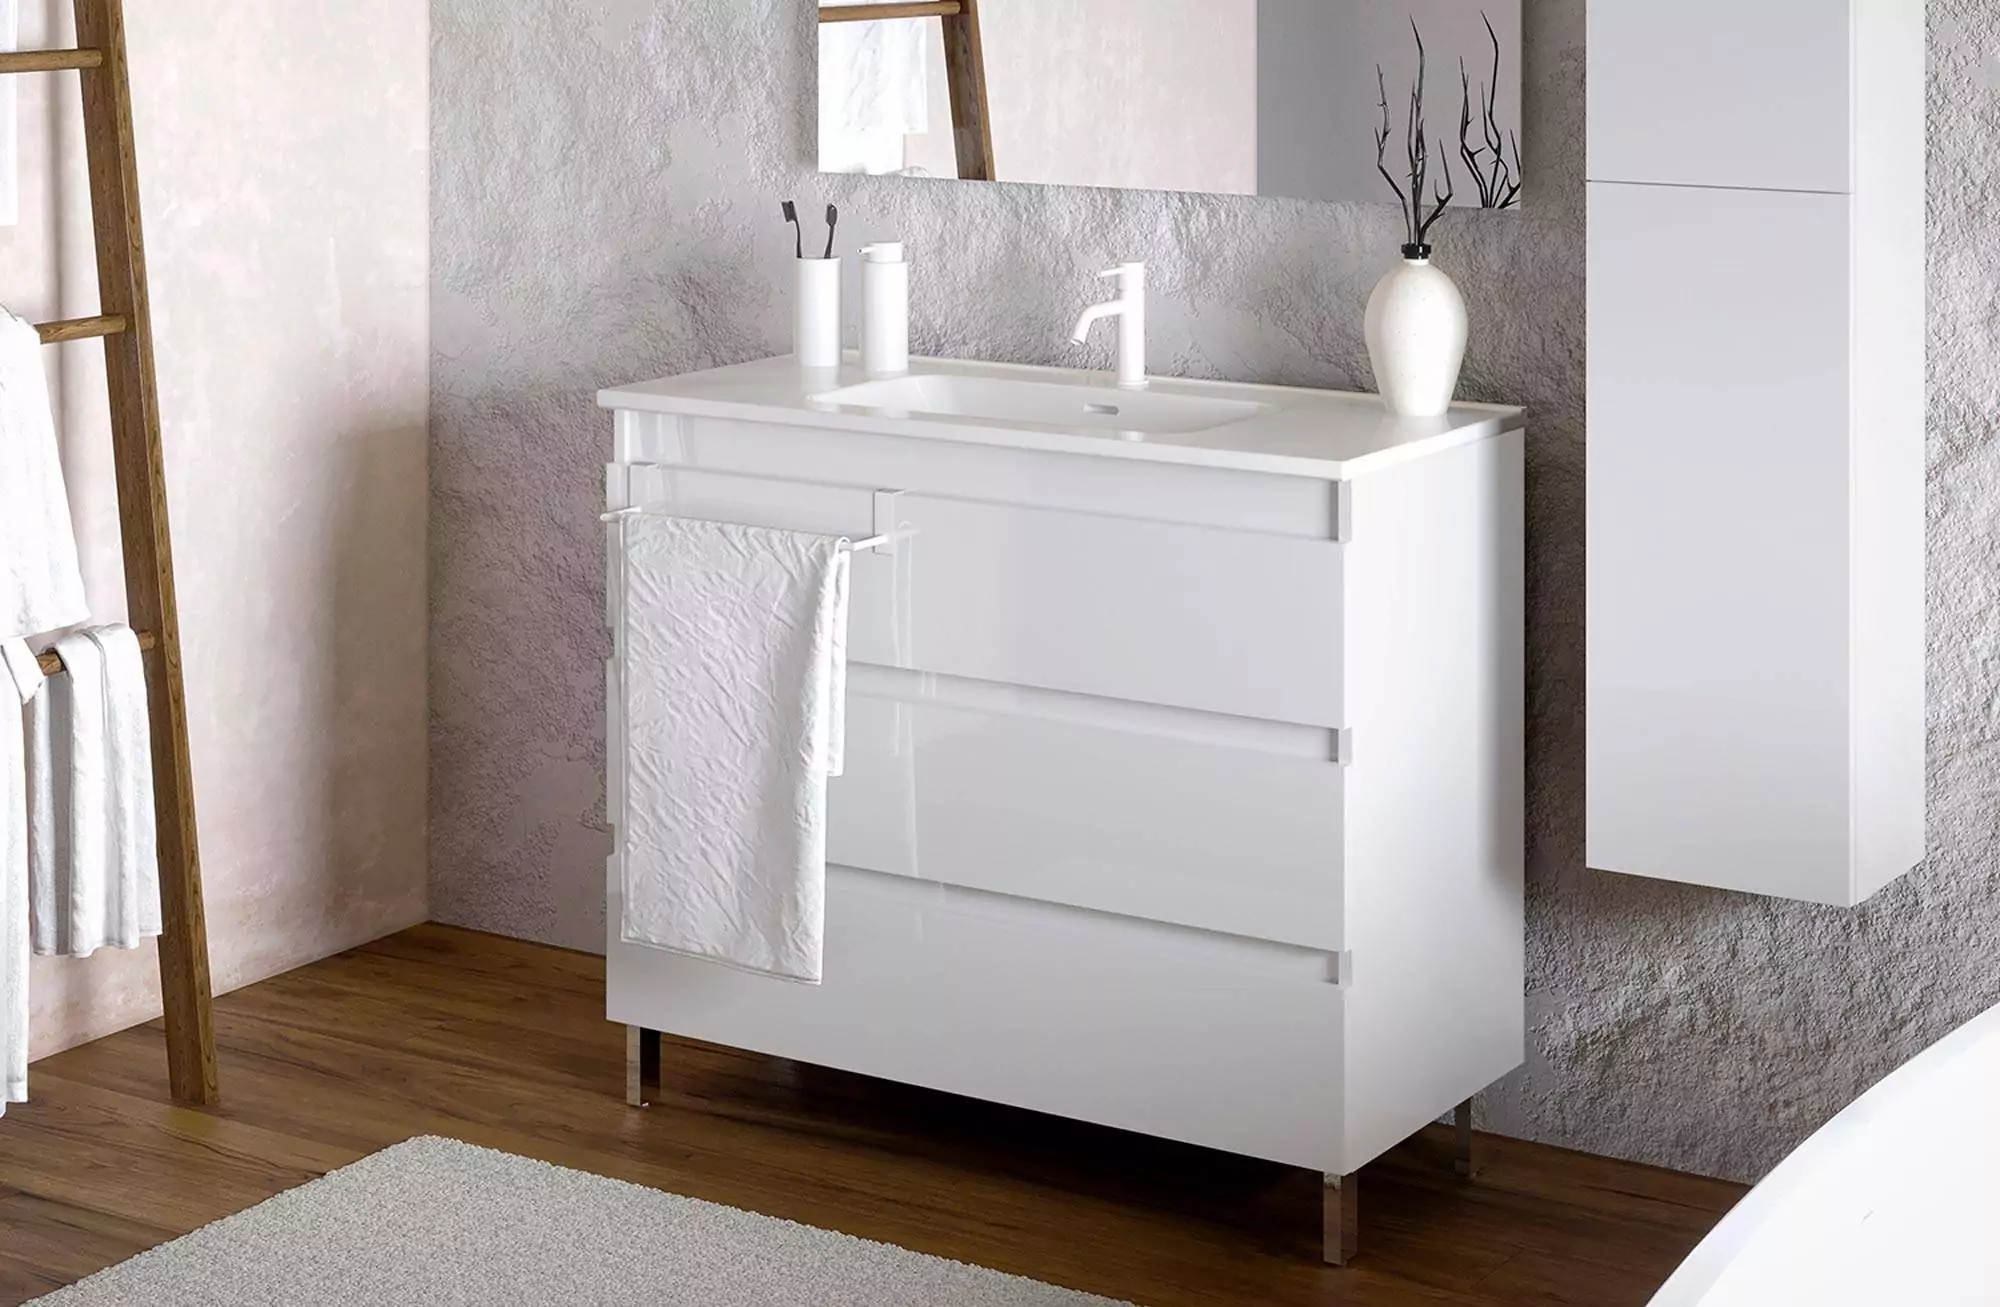 https://media1.minspira.com/4150-thickbox_default/mueble-b-best-de-100-cm-blanco-brillo-con-3-cajones-y-lavabo-de-porcelana-bath.webp